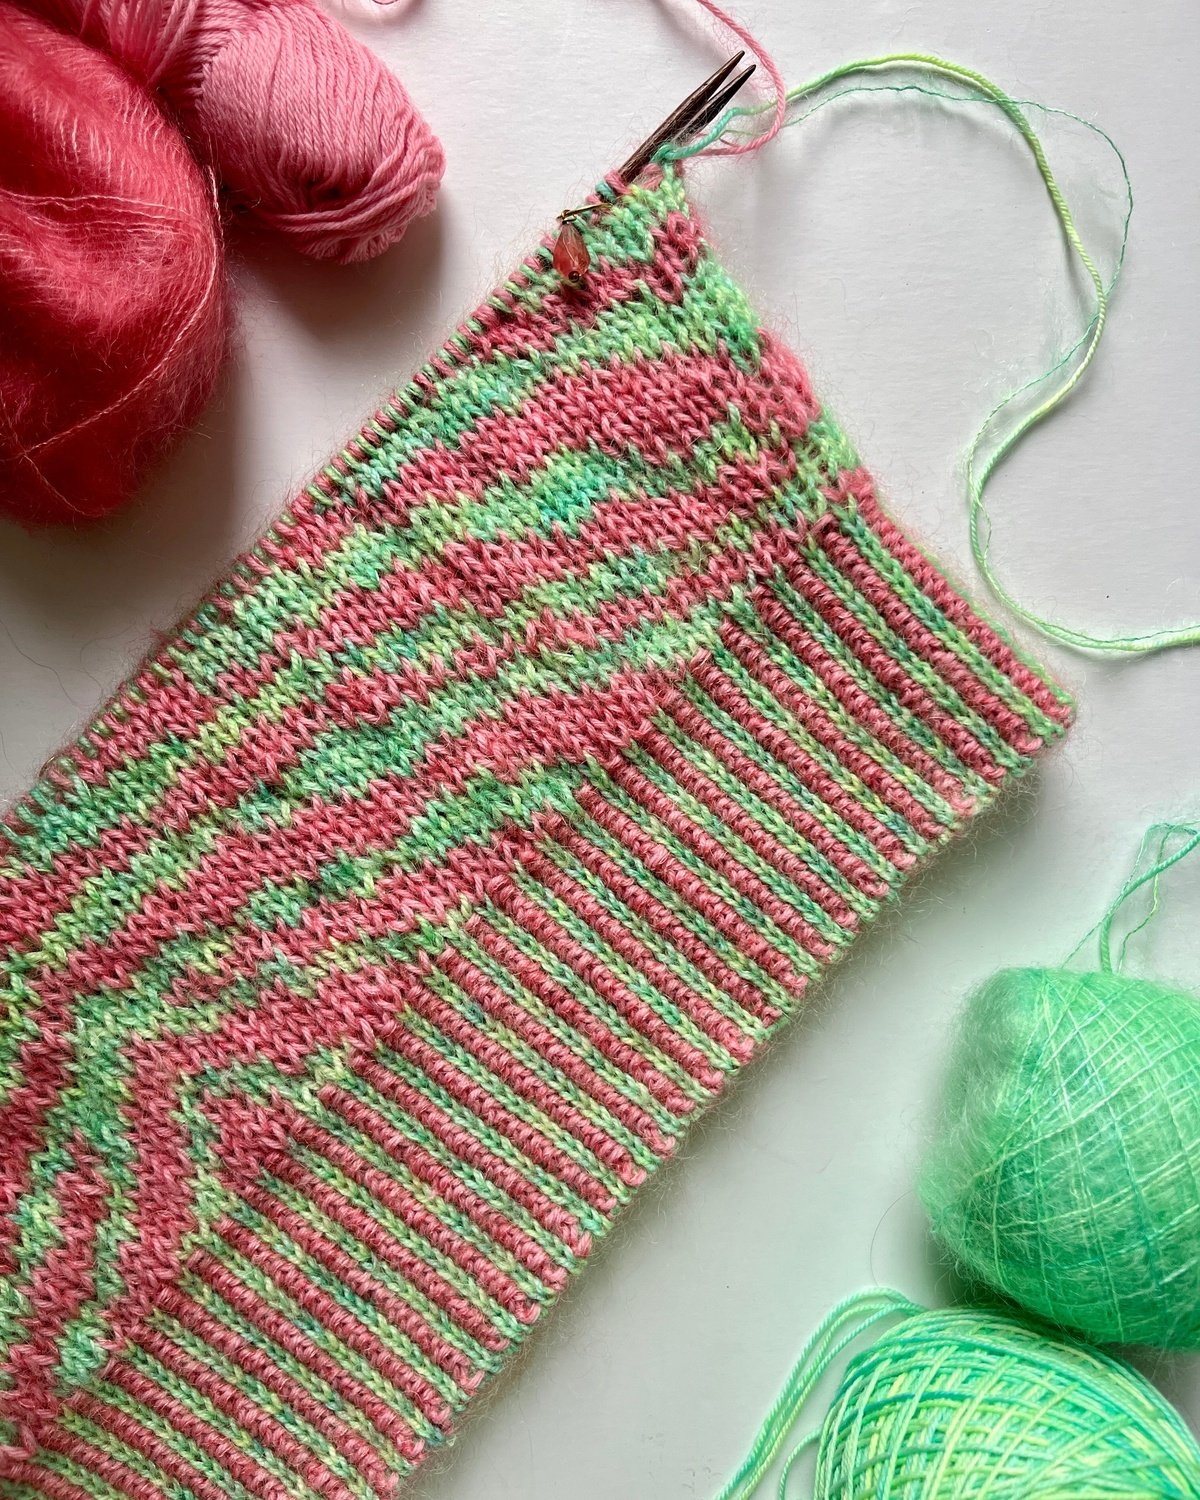 Zebra Skirt English Popknit knitting pattern